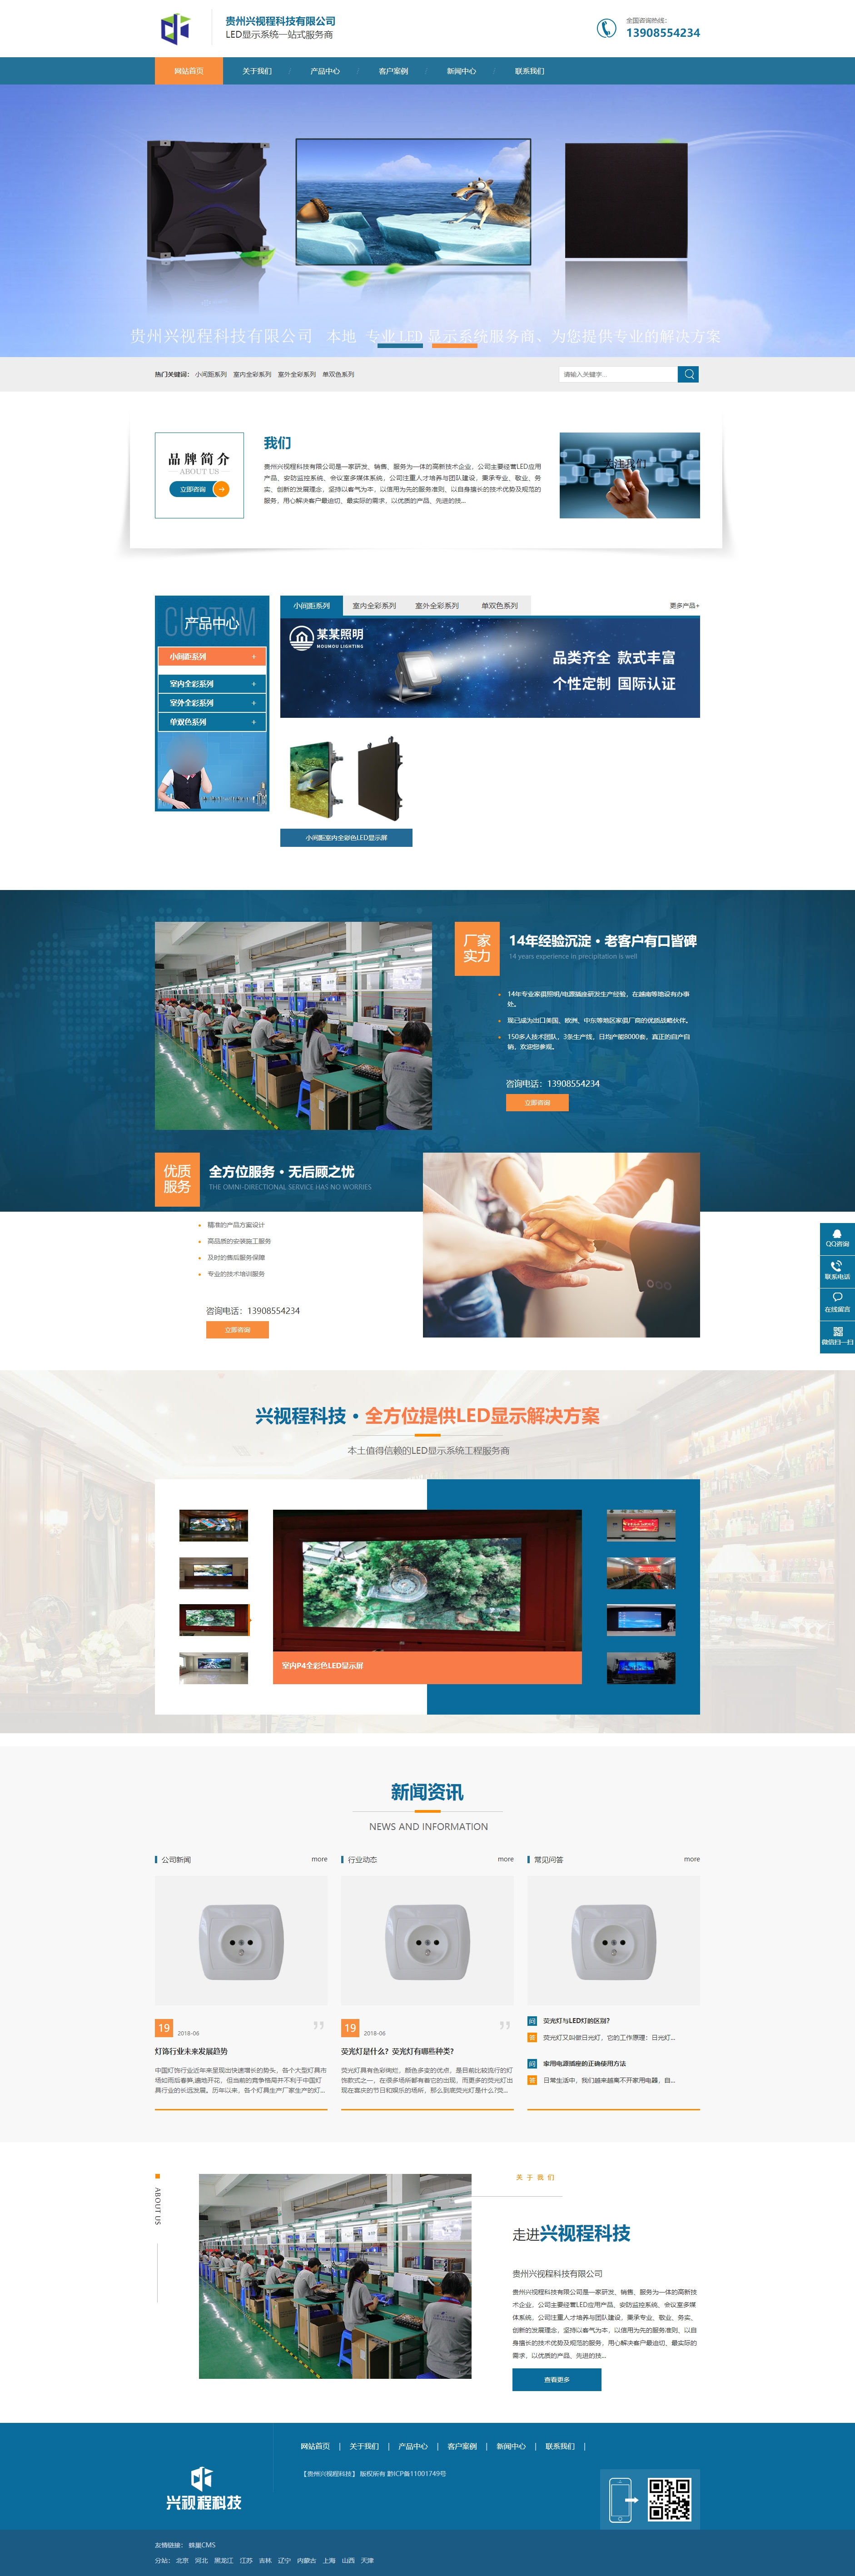 榕江贵州兴视程科技有限公司 网站正式上线